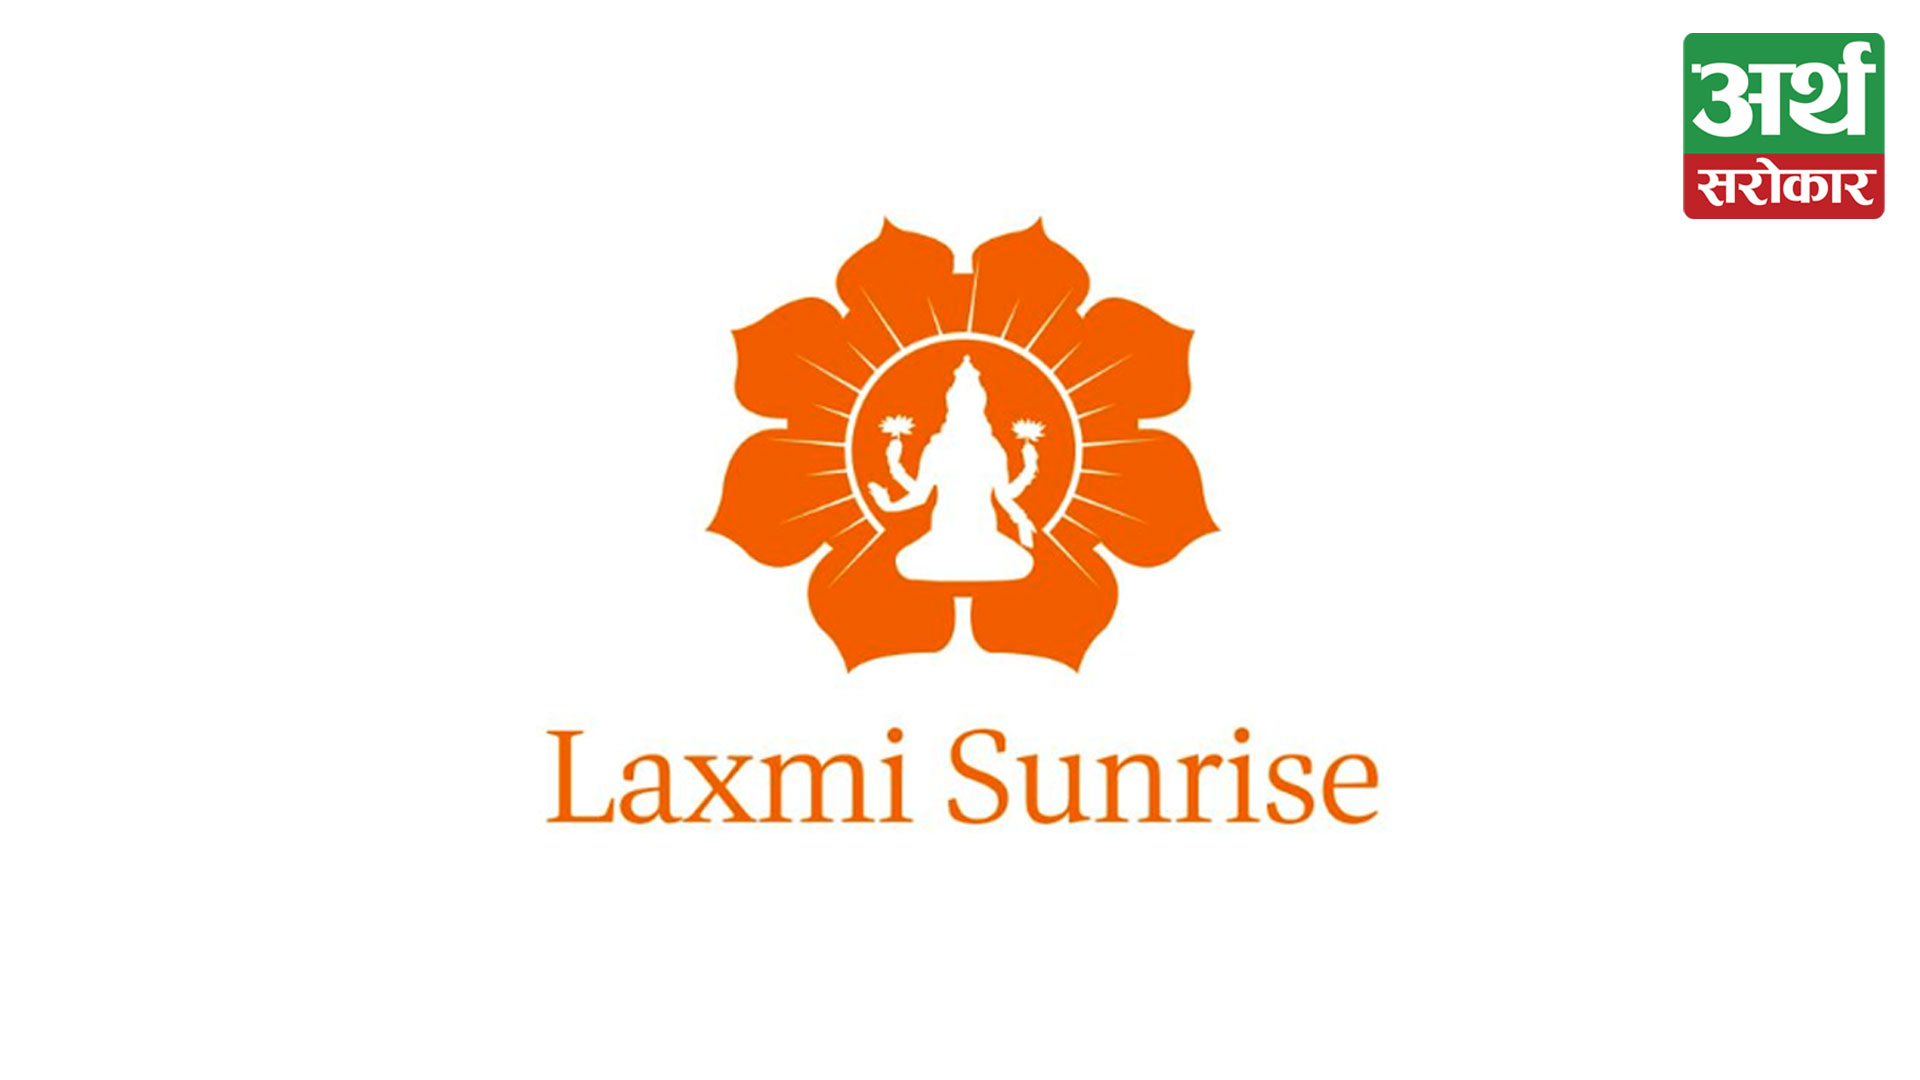 Laxmi Sunrise Bank announces a 7.37% dividend